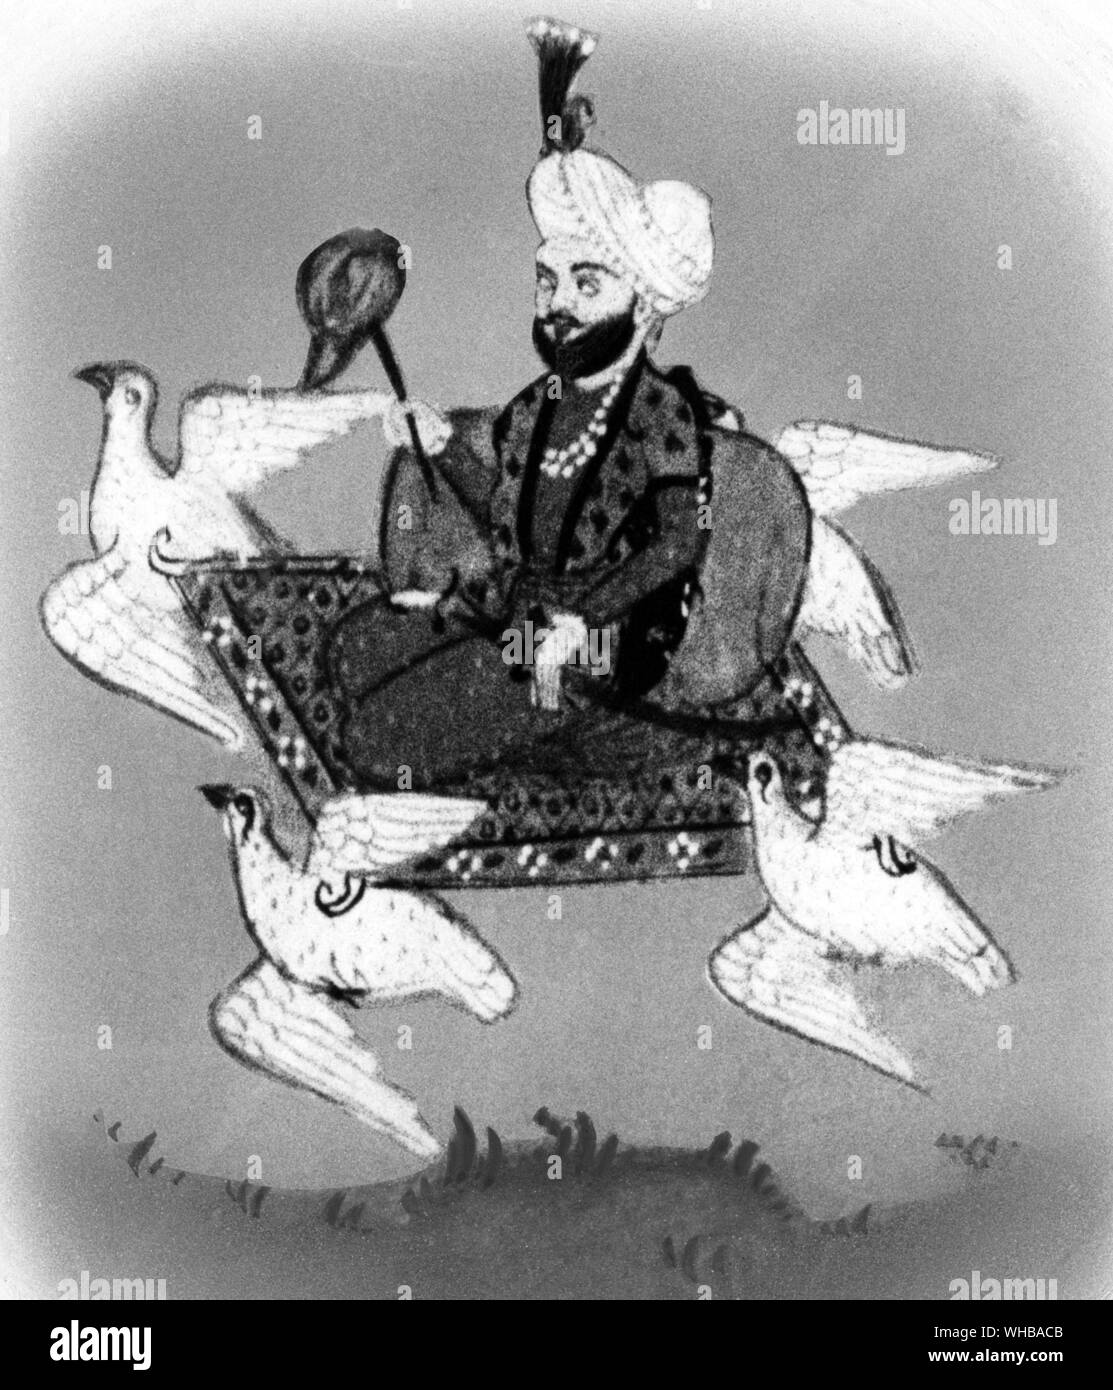 Einen fliegenden Teppich durch Tauben getragen: ilumination von Tarikh-i-shamshir Khani, Indische MS Stockfoto